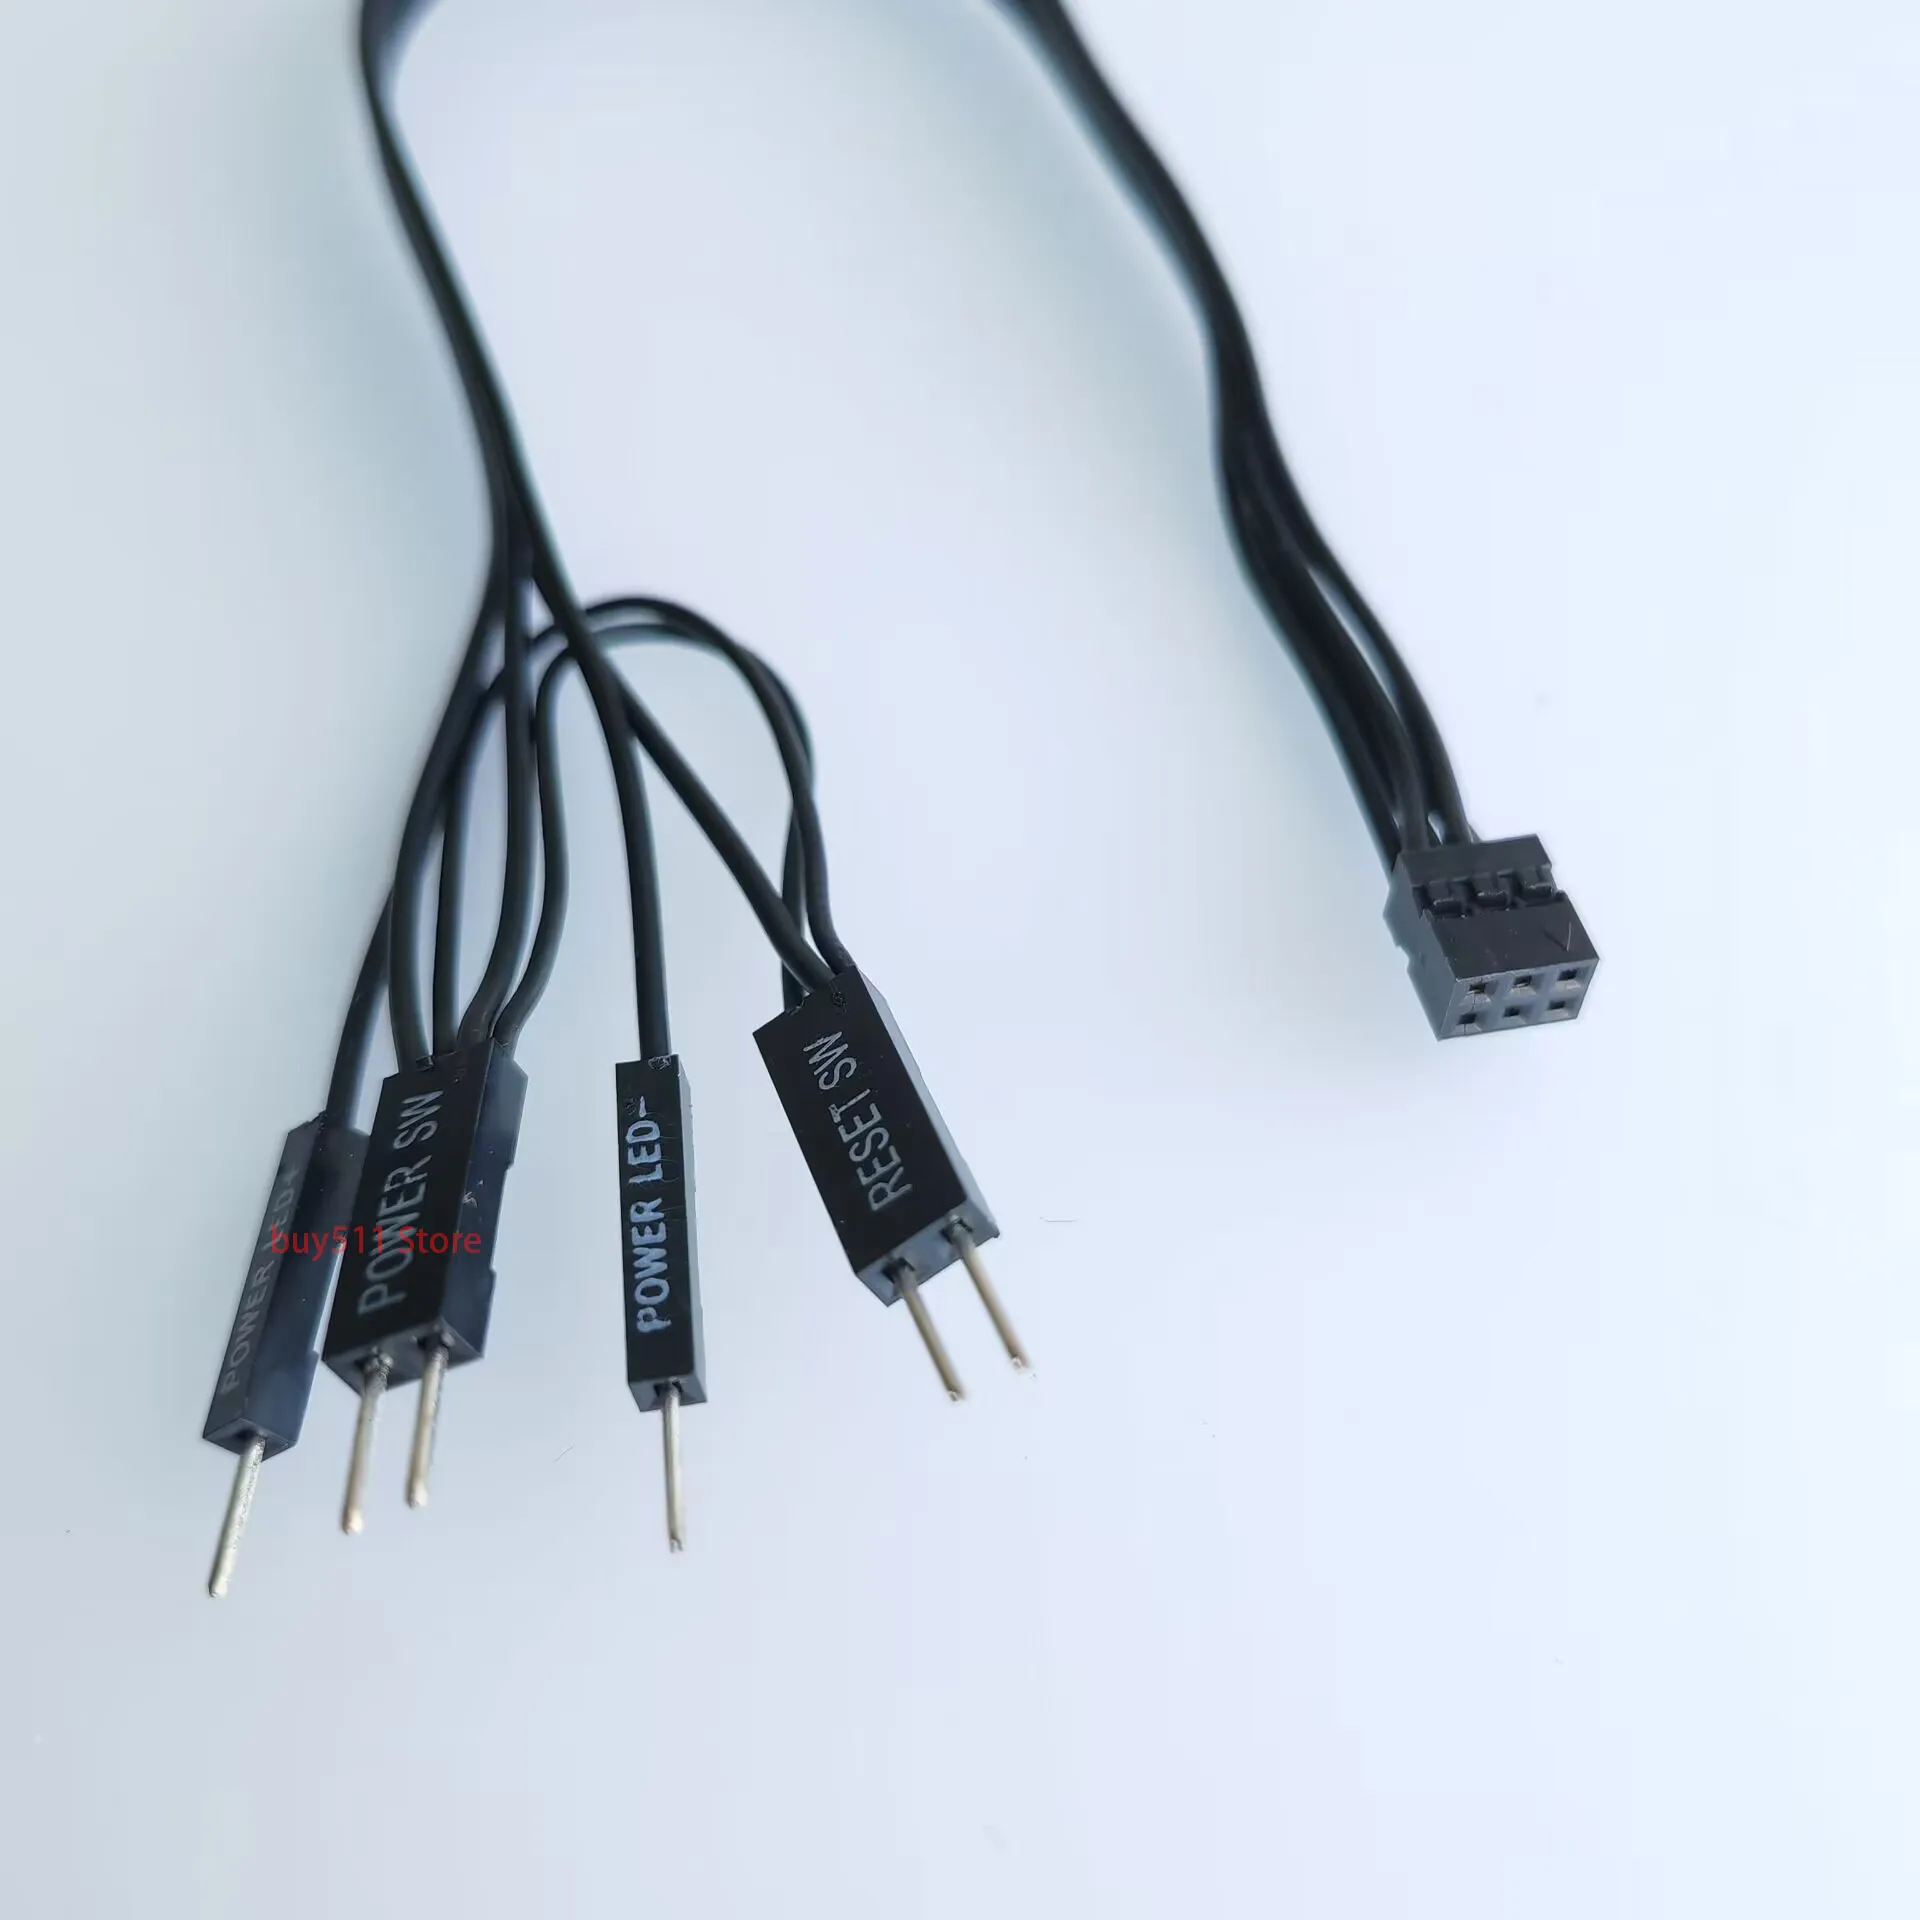 Kleine 6Pin 8Pin Buchse zum Power LED SW Reset Schalter Dupont I/O Kabel für Dell Mainboard Motherboard Funktioniert auf normalen Gehäusen